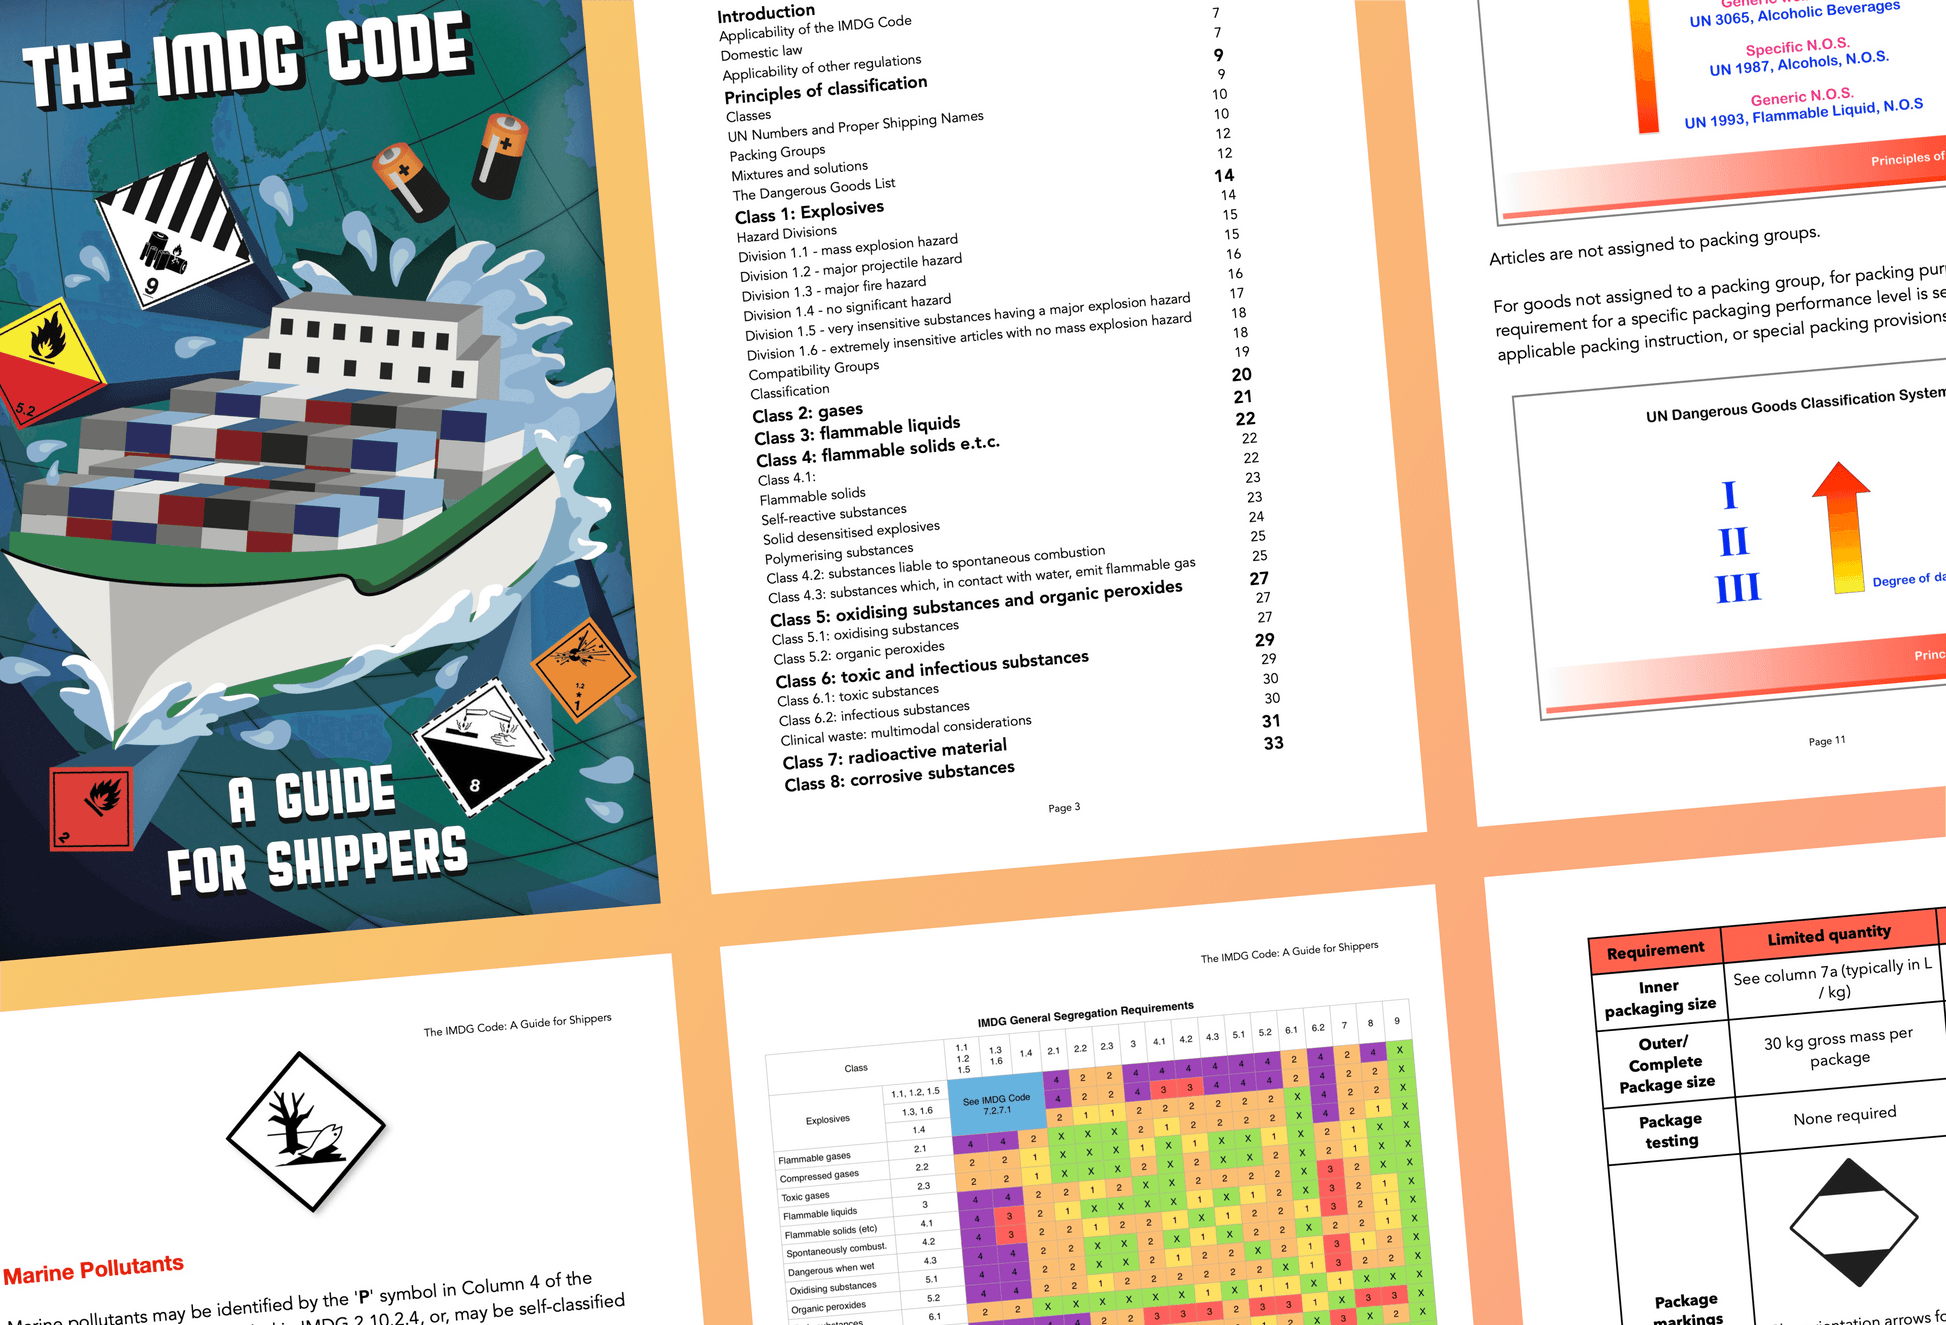 IMDG Code handbook contents